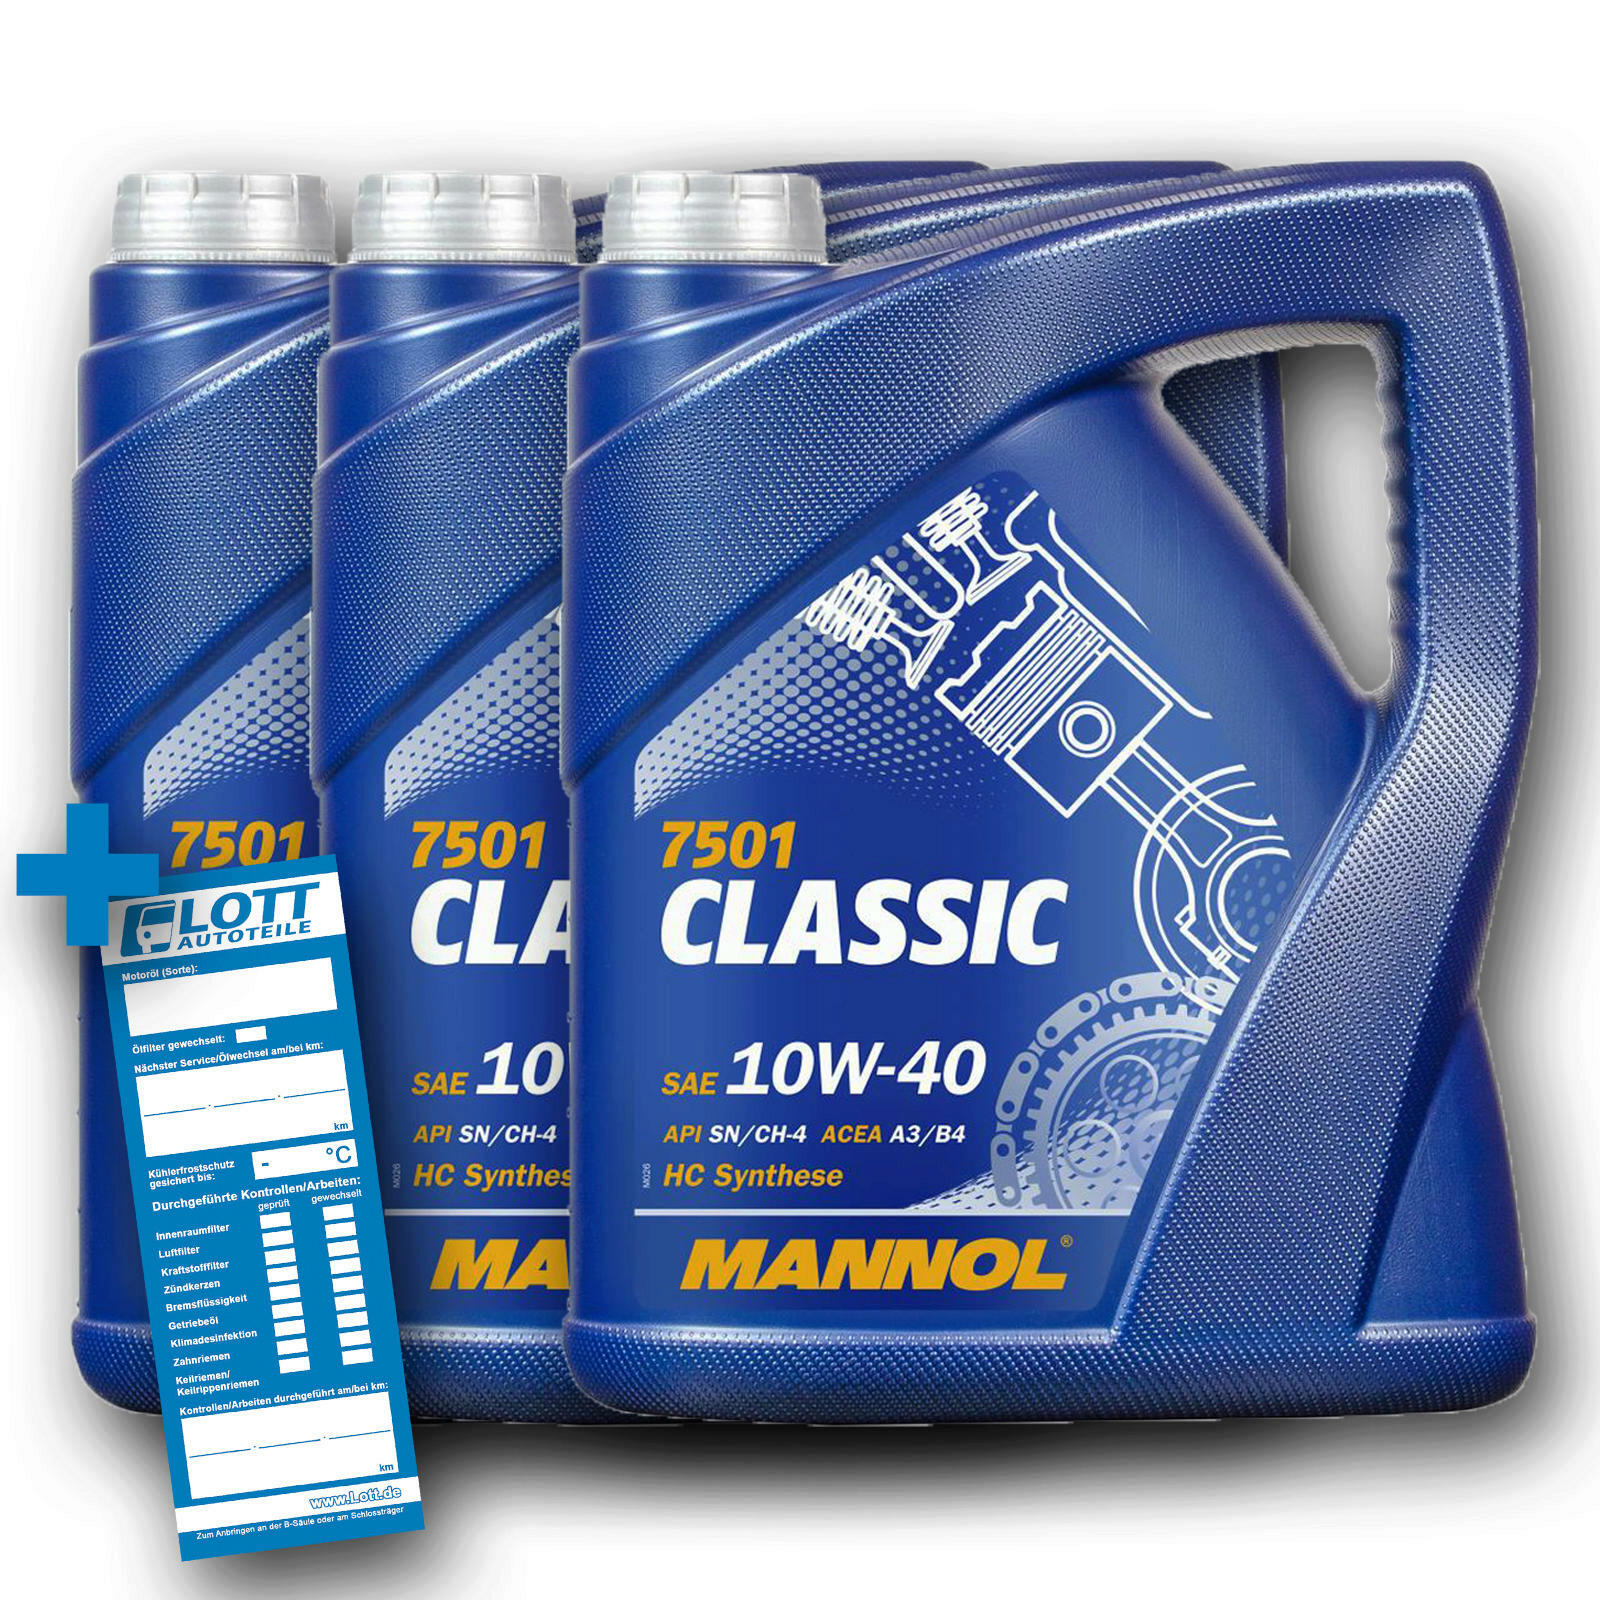 3x 5L Mannol Motoröl Classic 10W-40 MN7501-5